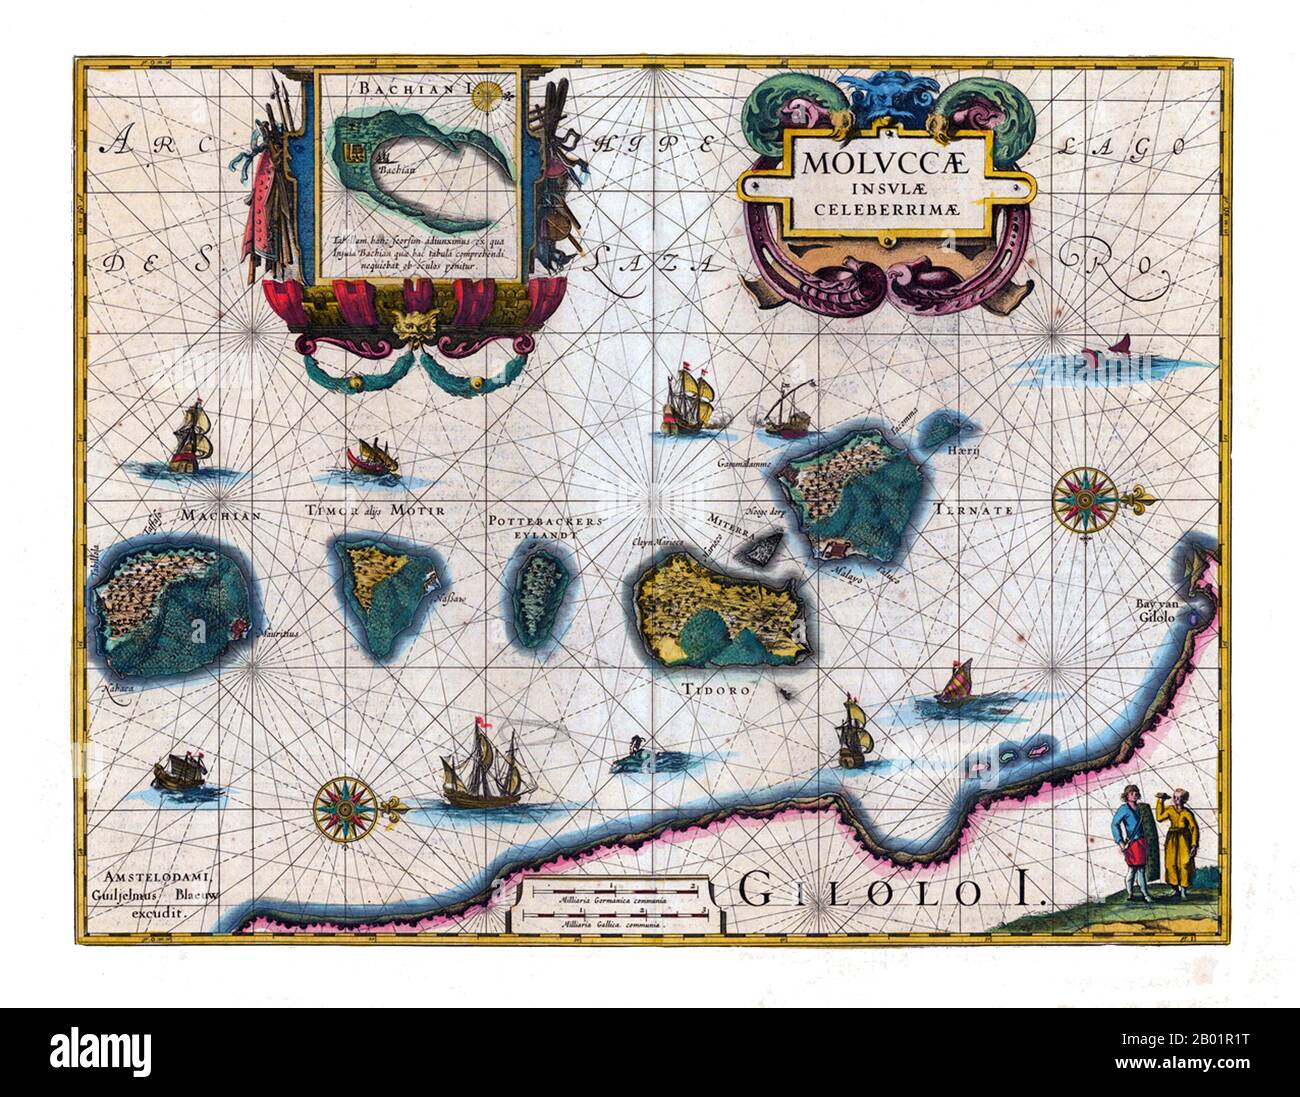 Indonesien/Niederlande: Wahrscheinlich die erste veröffentlichte Karte der Maluku-Inseln. Kupferstich von Jodocus Hondius (17. Oktober 1563 bis 12. Februar 1612) und gefunden in „Atlas Annex“ von Willem Blaeu (1571.-21. Oktober 1638), 1630. Die Maluku-Inseln (auch bekannt als Molukken, Molukken-Inseln und Gewürzinseln) sind ein Archipel, der Teil Indonesiens und der größeren maritimen Region Südostasien ist. Tektonisch befinden sie sich auf der Halmahera-Platte innerhalb der Molucca Sea Collision Zone. Geografisch liegen sie östlich von Sulawesi (Celebes) und westlich von Neuguinea. Stockfoto